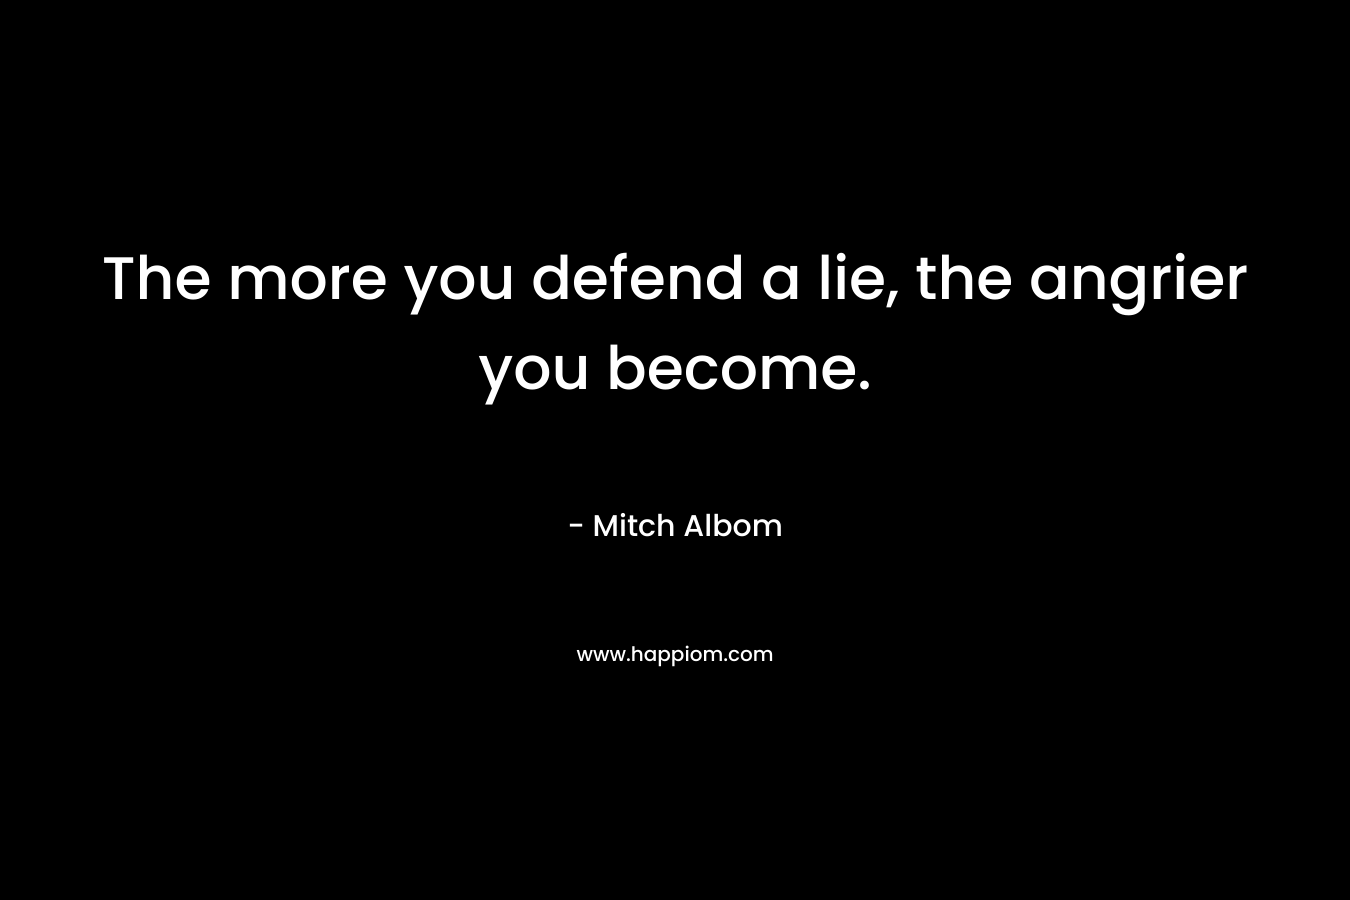 The more you defend a lie, the angrier you become. – Mitch Albom